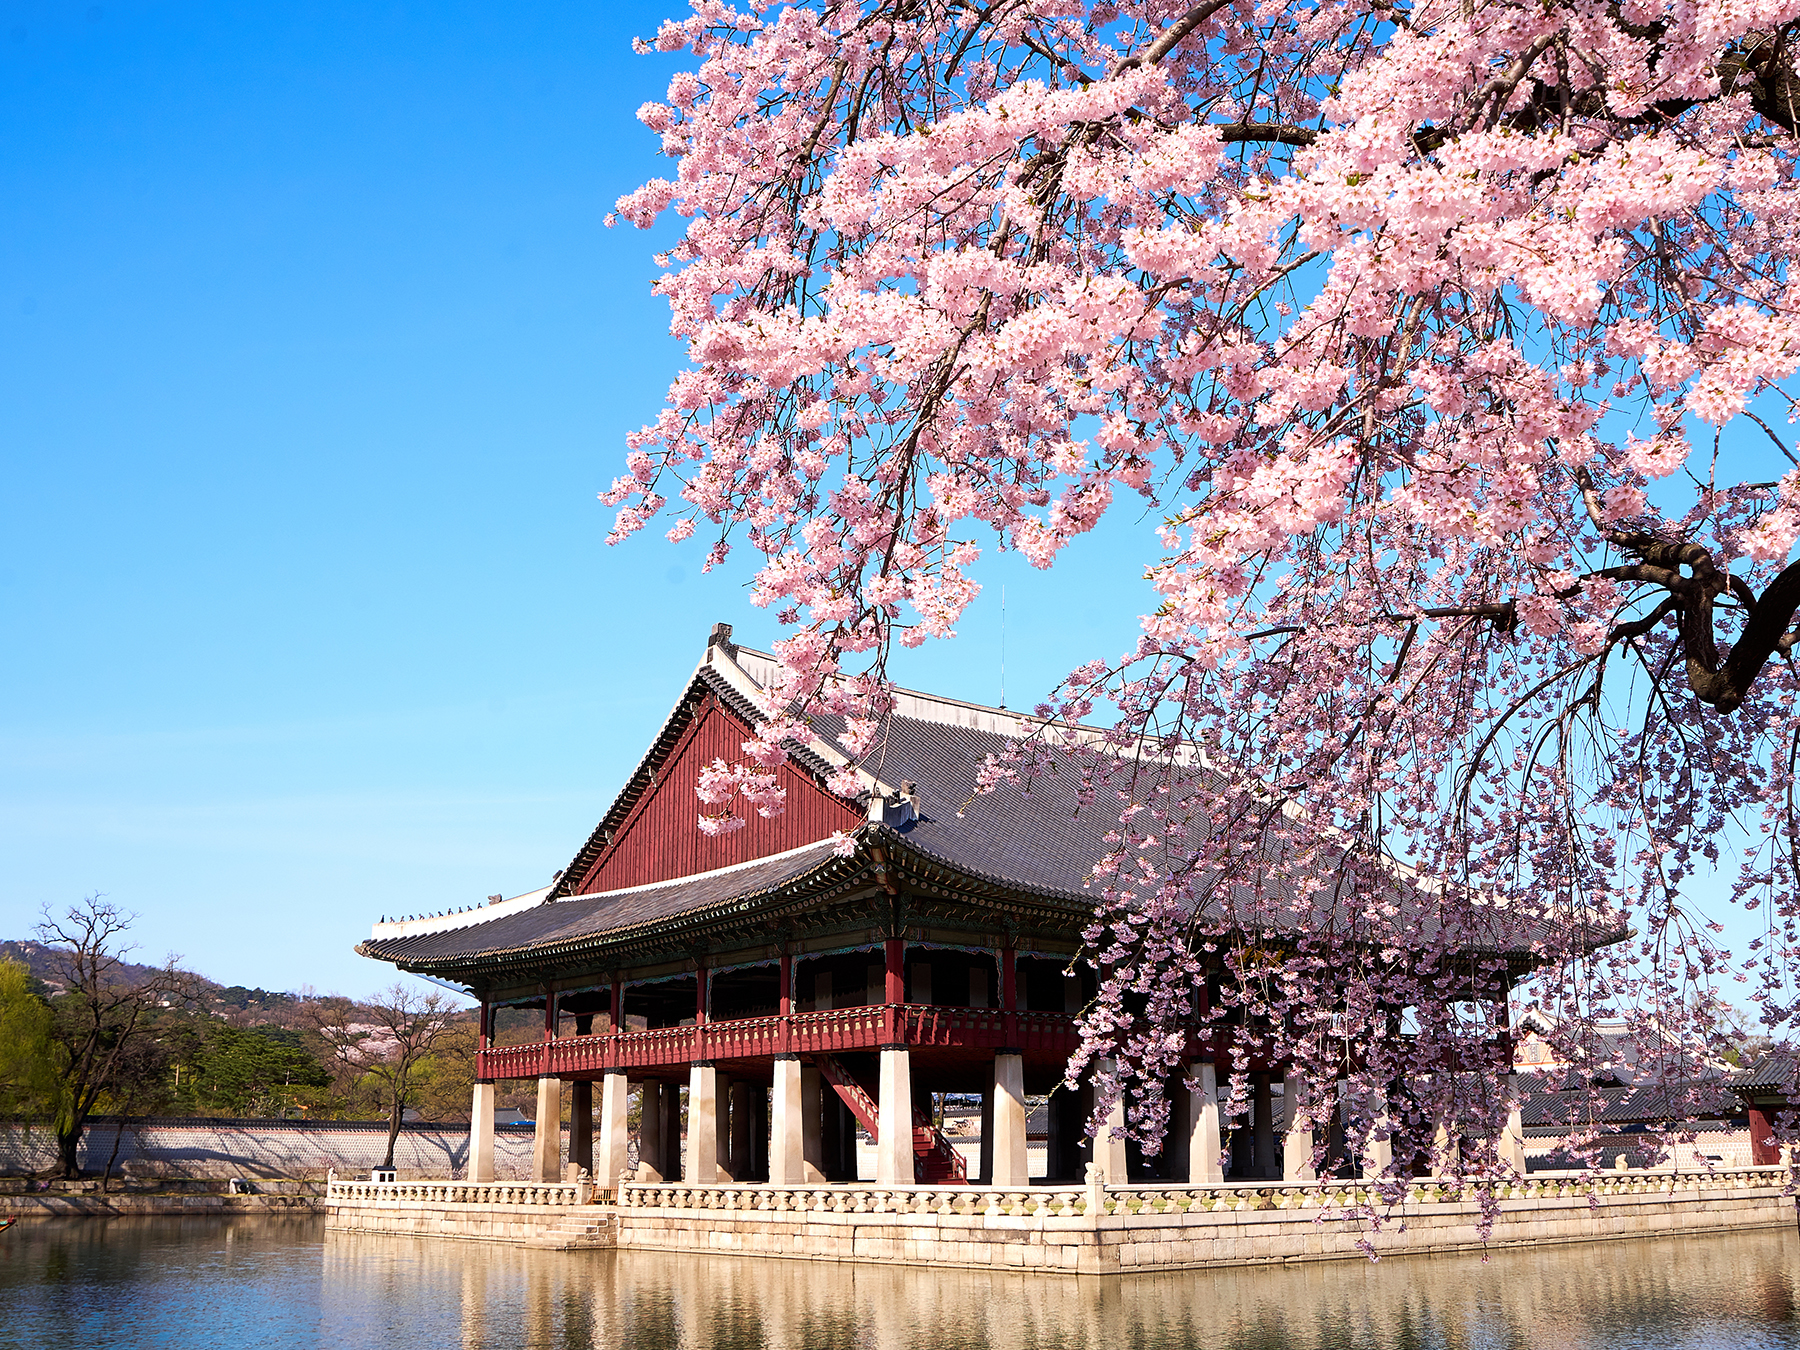 Tour du lịch Chuncheon của Sunvina Travel 2022/2023 154551